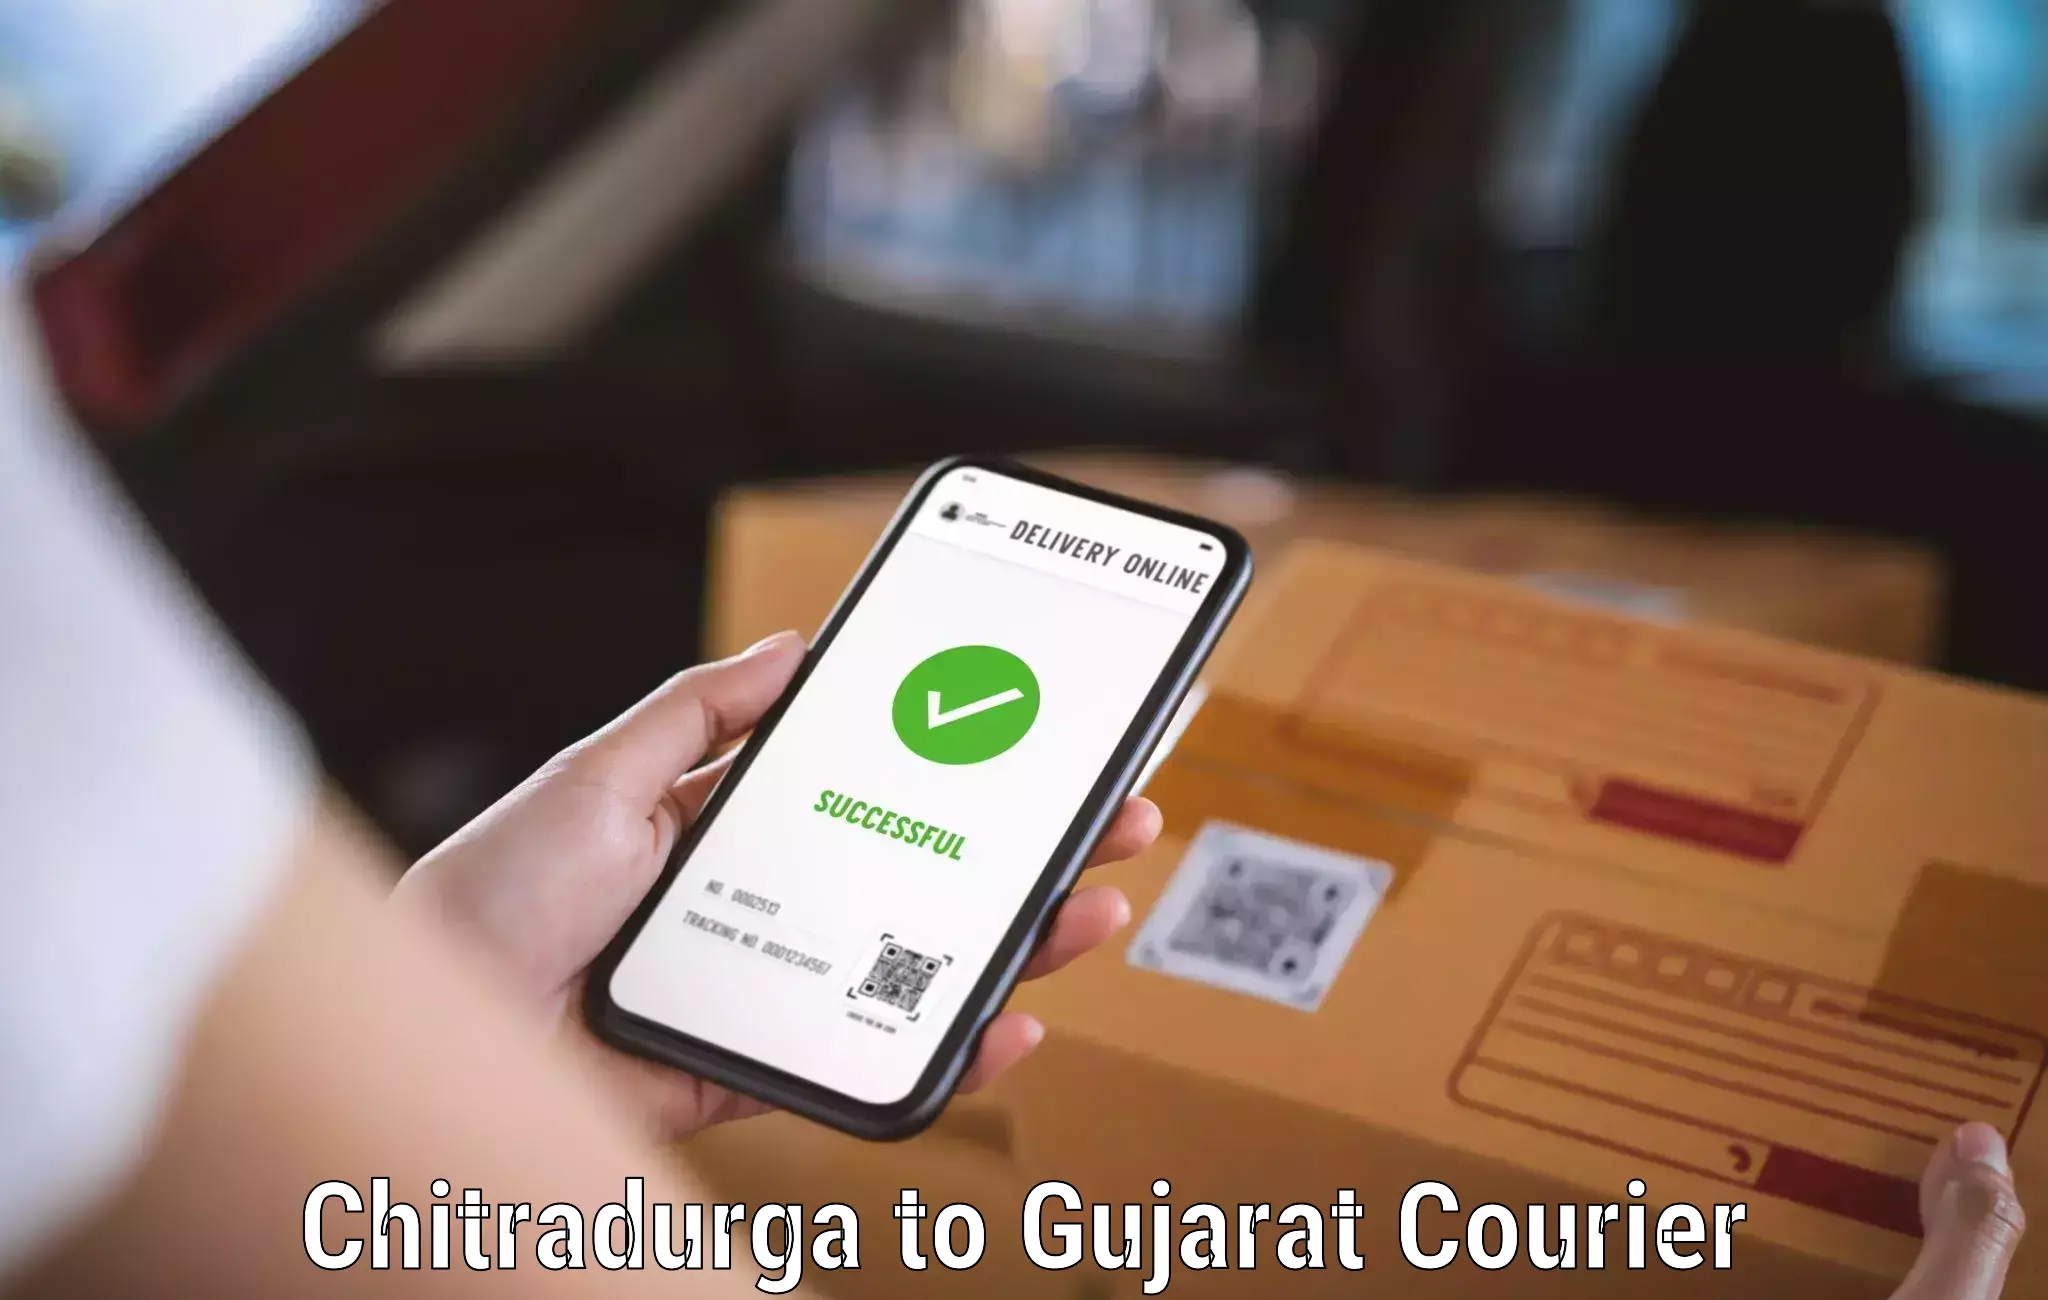 Global logistics network Chitradurga to Gujarat